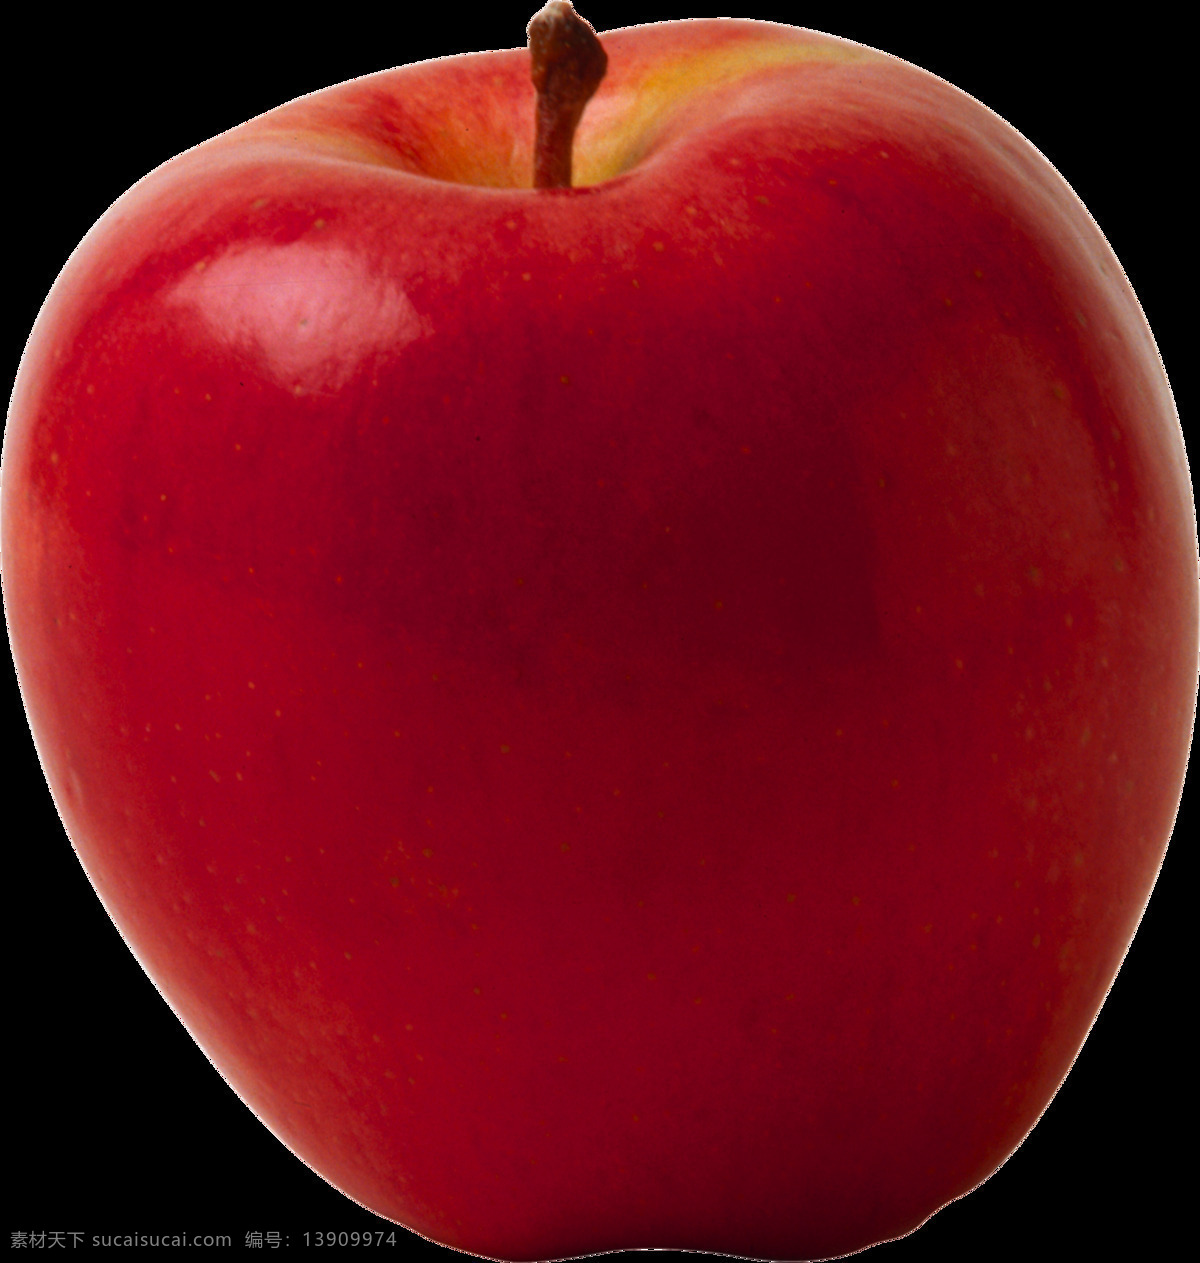 漂亮 红 颜色 苹果 免 抠 透明 图 层 苹果图片 苹果照片 青苹果 logo 苹果简笔画 壁纸高清 大苹果 红苹果 苹果梨树 苹果商标 金毛苹果 青苹果榨汁